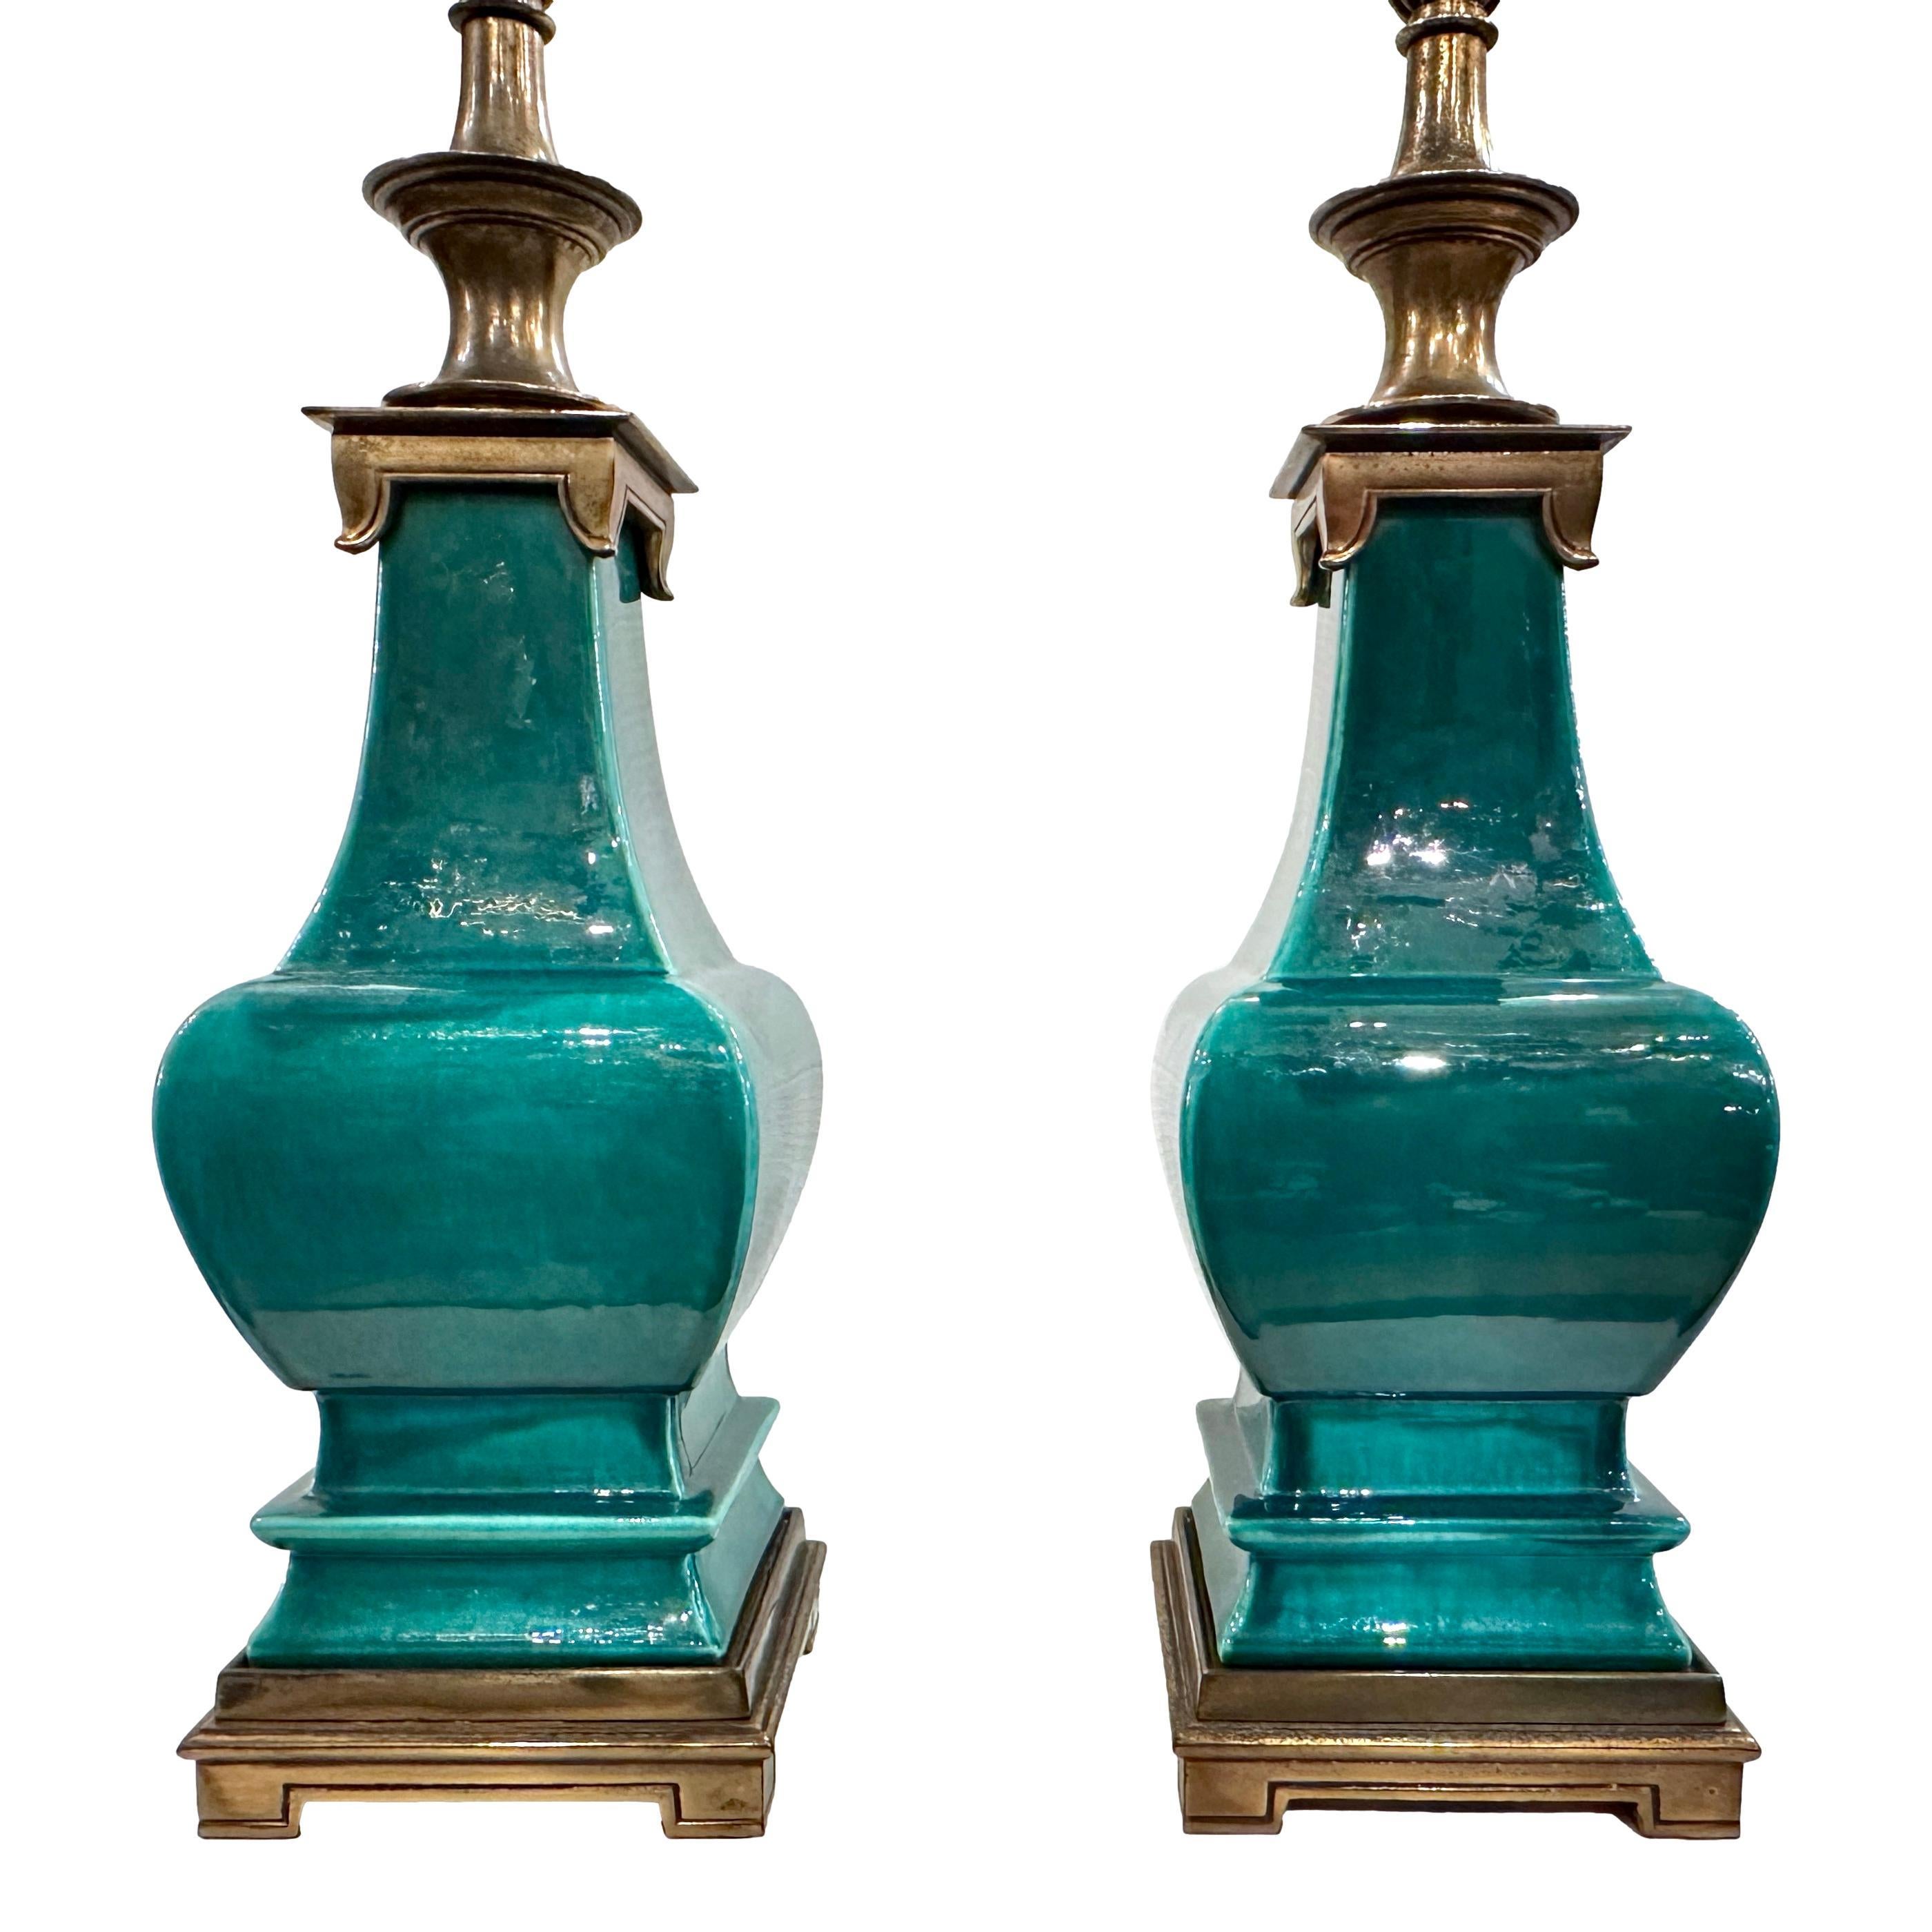 Paar französische Tischlampen aus smaragdgrün glasiertem Porzellan mit Messingfuß, CIRCA 1940er Jahre.

Abmessungen:
Höhe des Porzellankörpers: 18